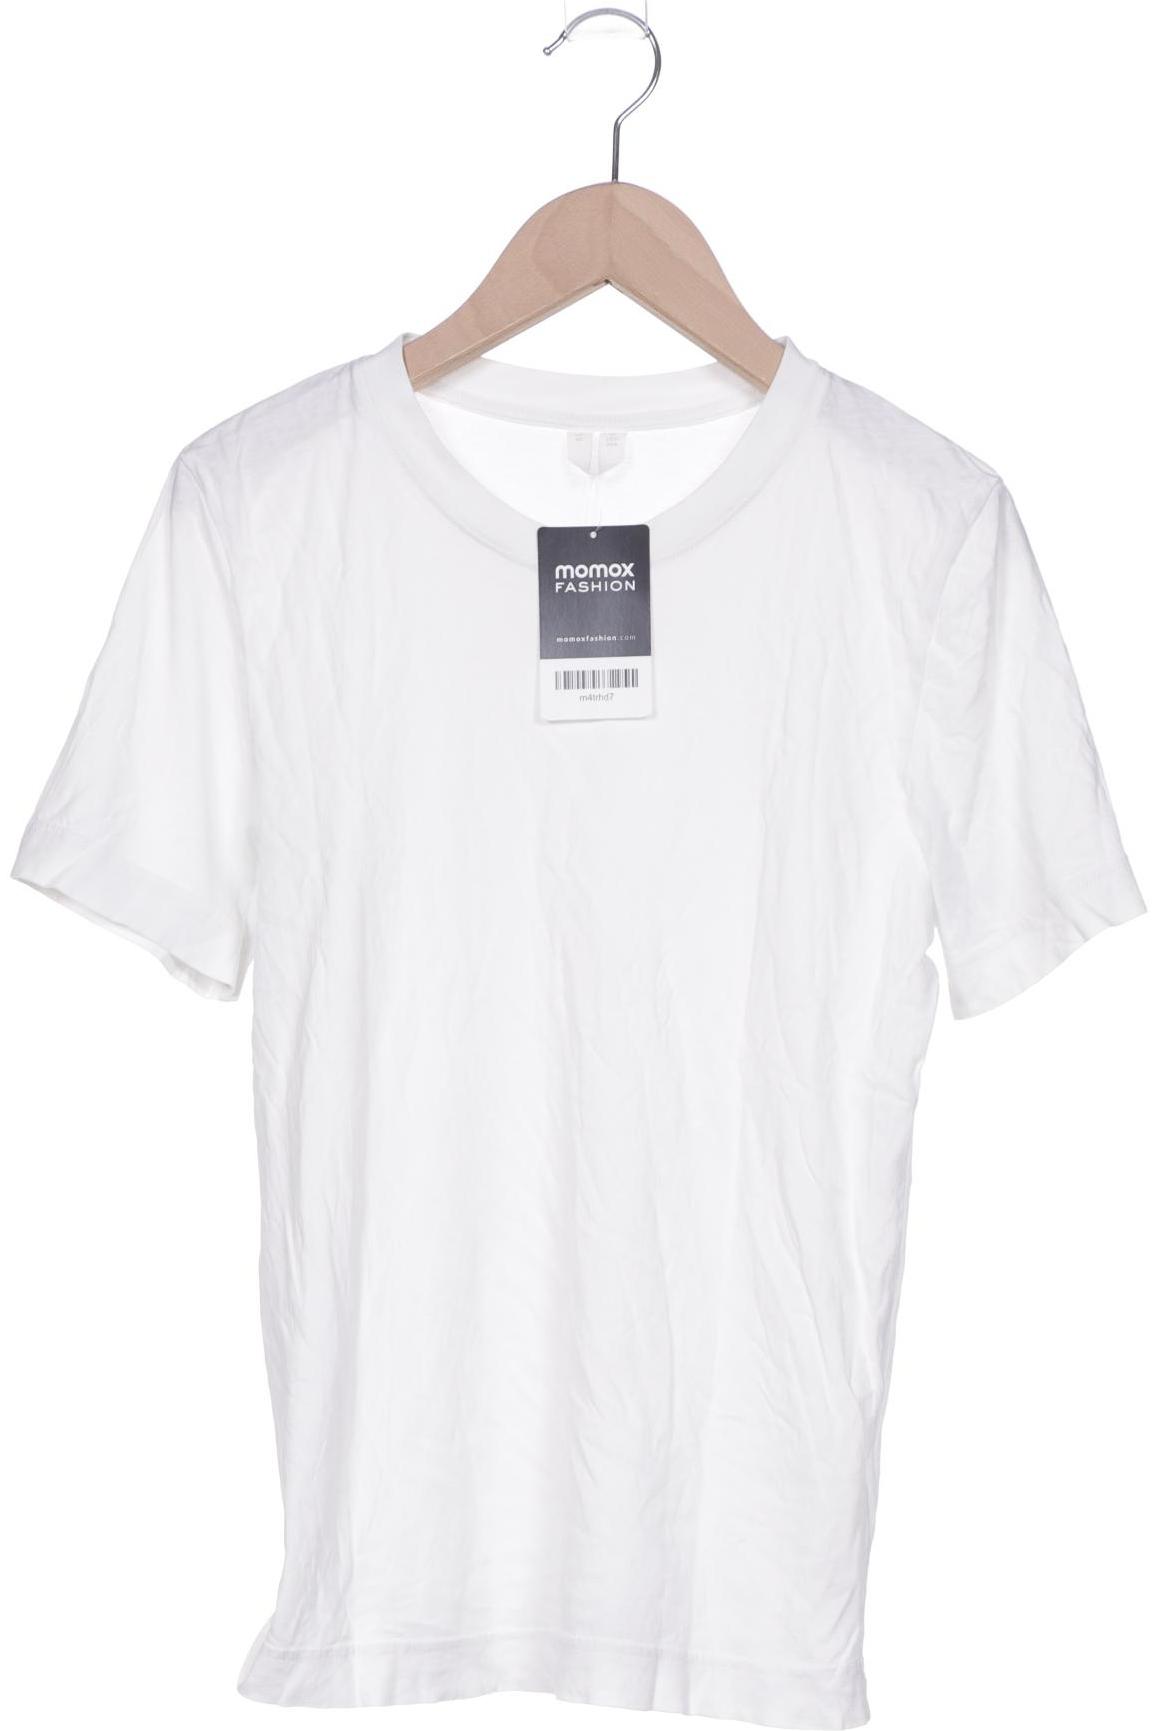 Arket Damen T-Shirt, weiß, Gr. 34 von Arket